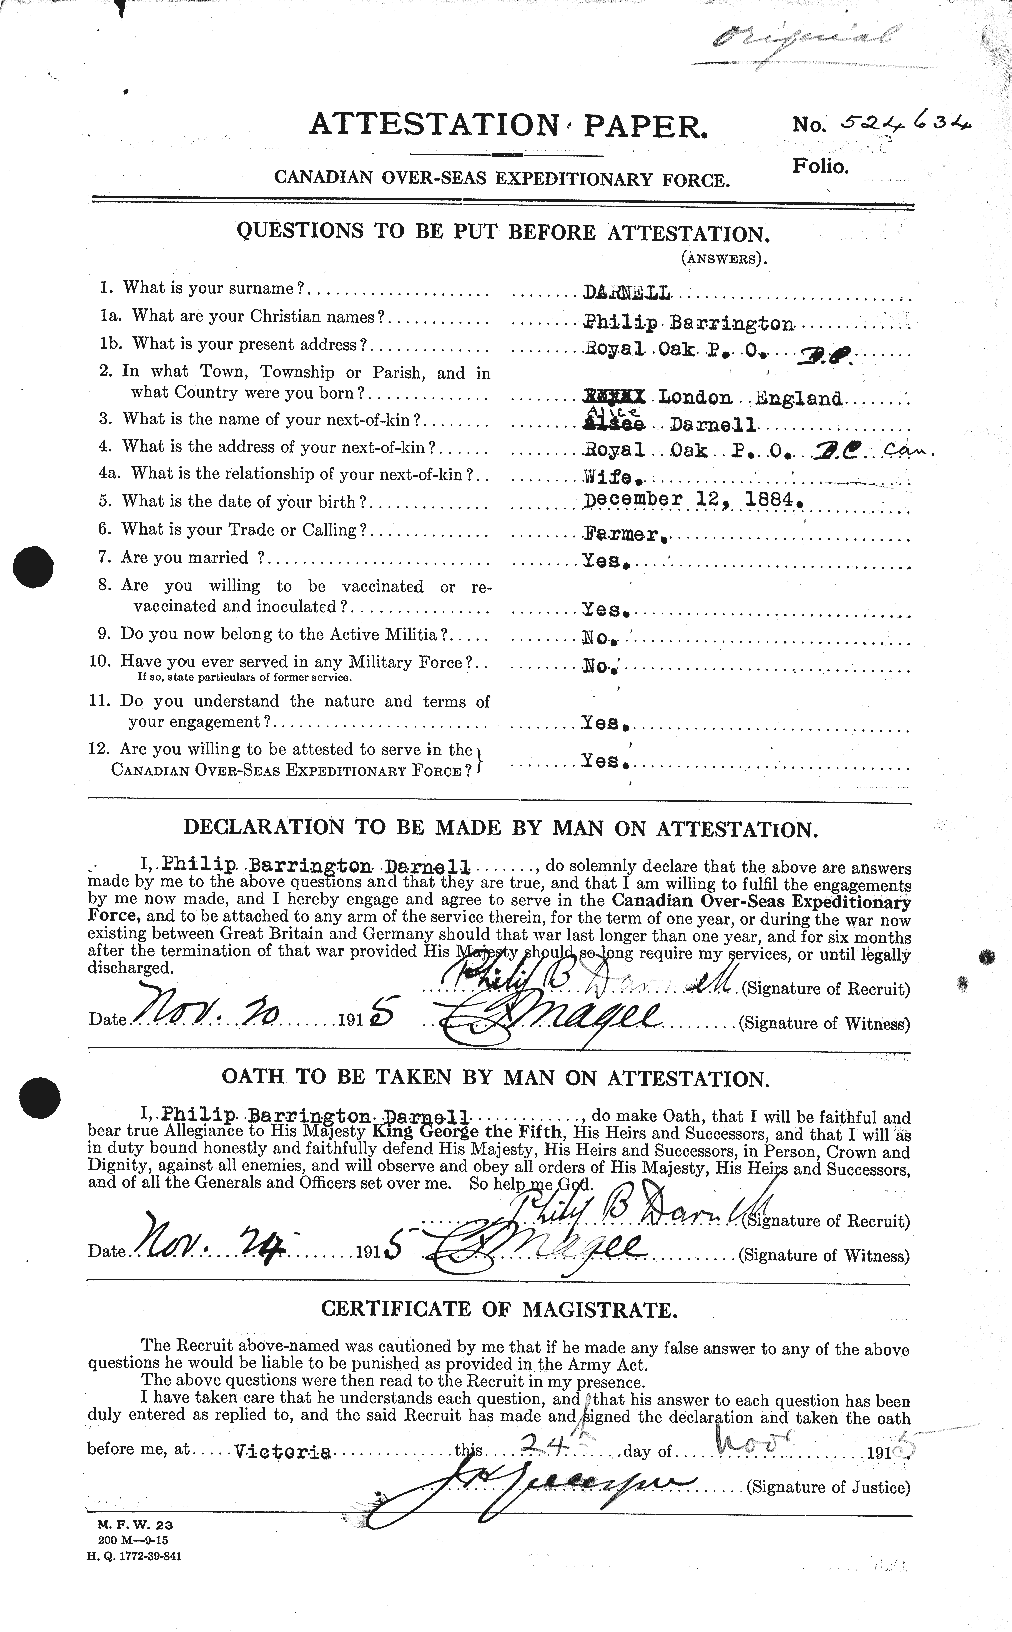 Dossiers du Personnel de la Première Guerre mondiale - CEC 280296a